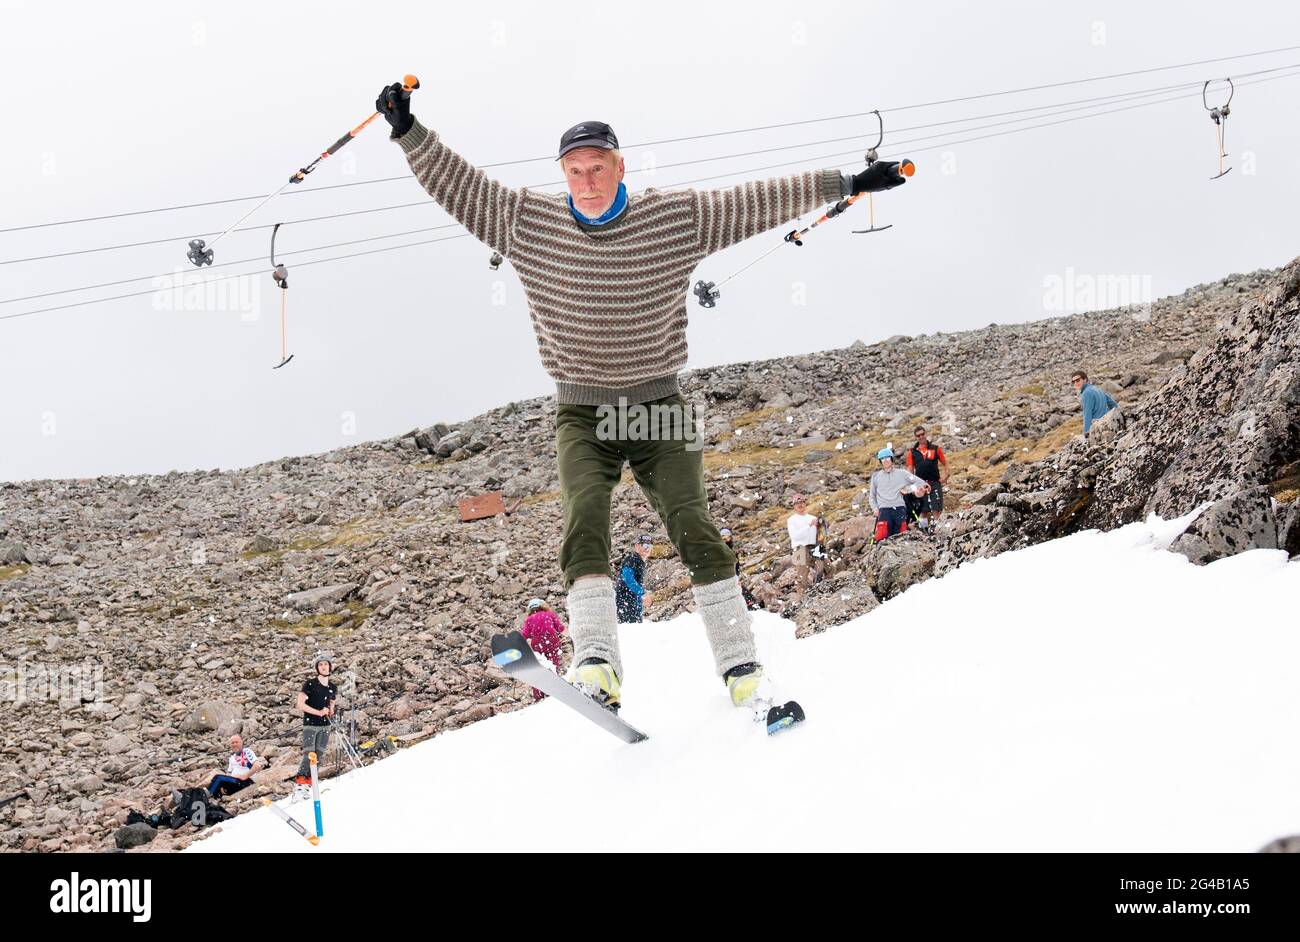 Mark Thomasson, de Kinlochleven, qui était l'un des quelque 20 skieurs et snowboarders qui ont grimpé jusqu'aux restes de neige sur Meall a'Bhuiridh à Glencoe pendant le ski du milieu de l'été. L'événement, organisé par le Glencoe Mountain Resort, se tient chaque année le week-end le plus proche du solstice d'été. Date de la photo: Dimanche 20 juin 2021. Banque D'Images